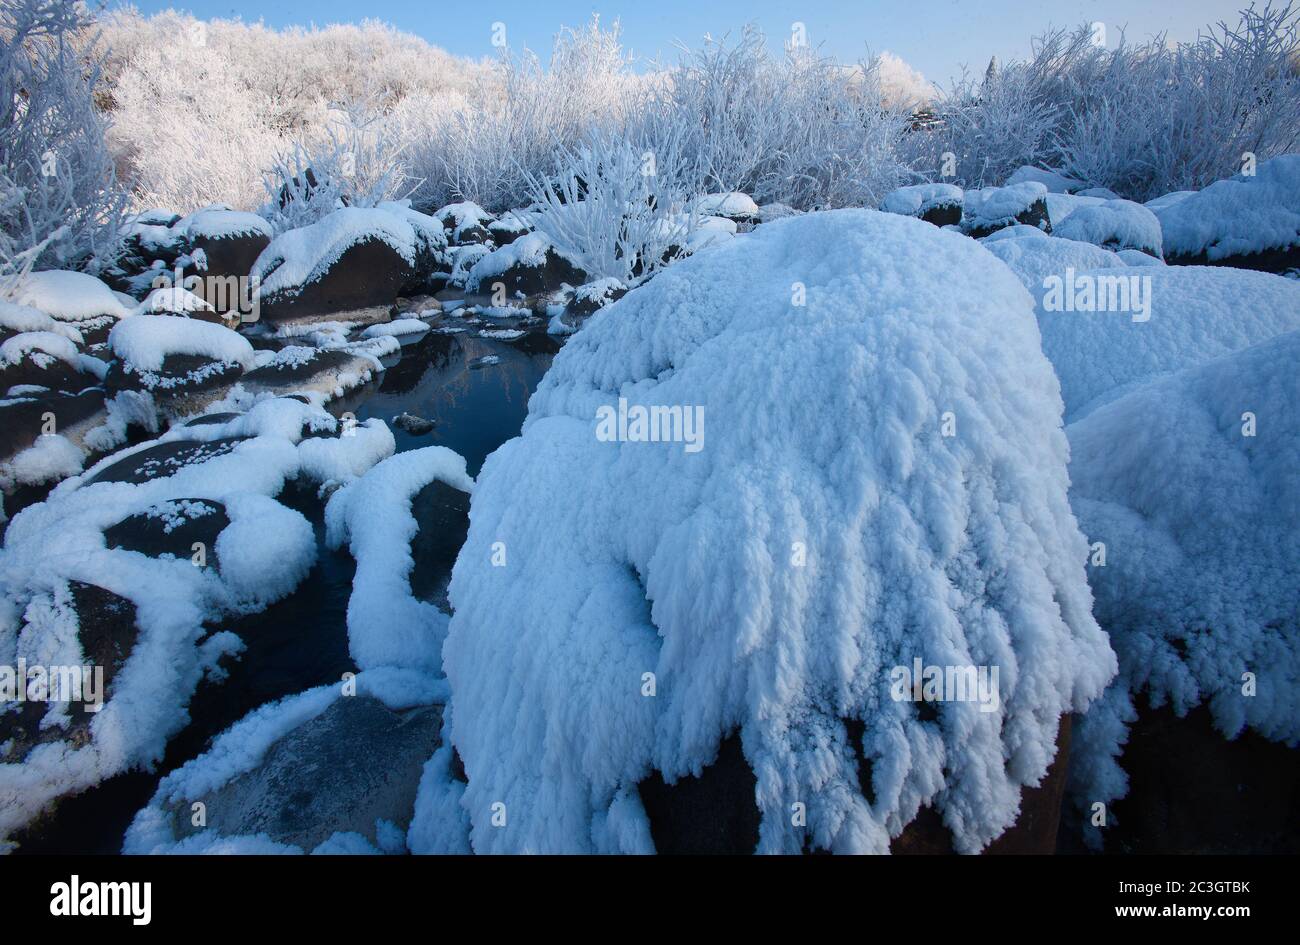 Heilongjiang provincia mudanjiang jingbo nieve Foto de stock